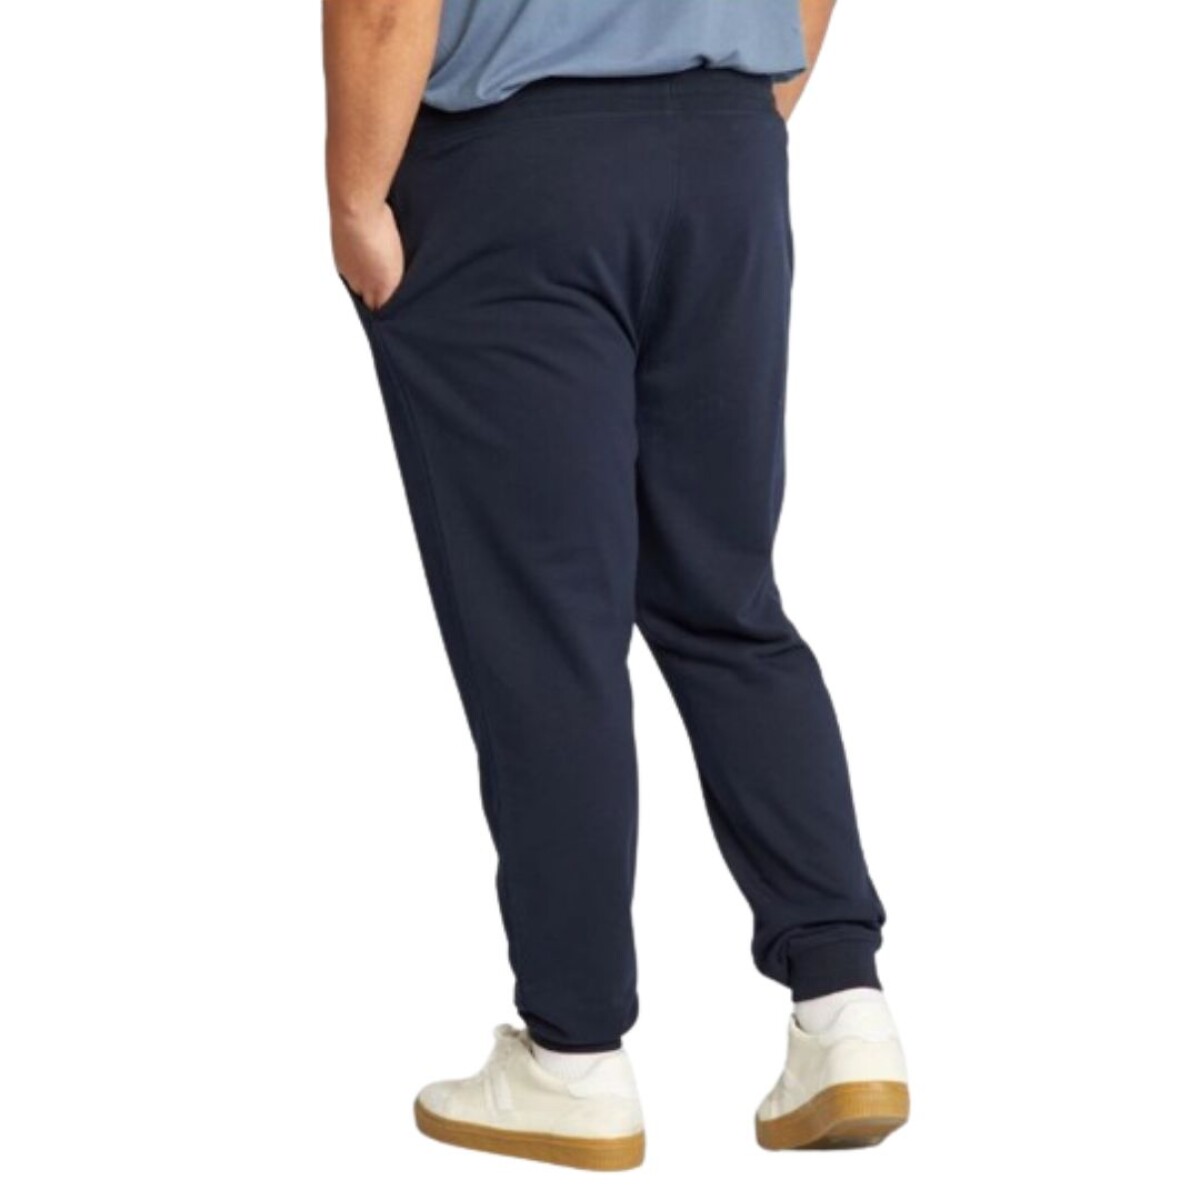 Pantalón felpa talles especiales - Azul marino 